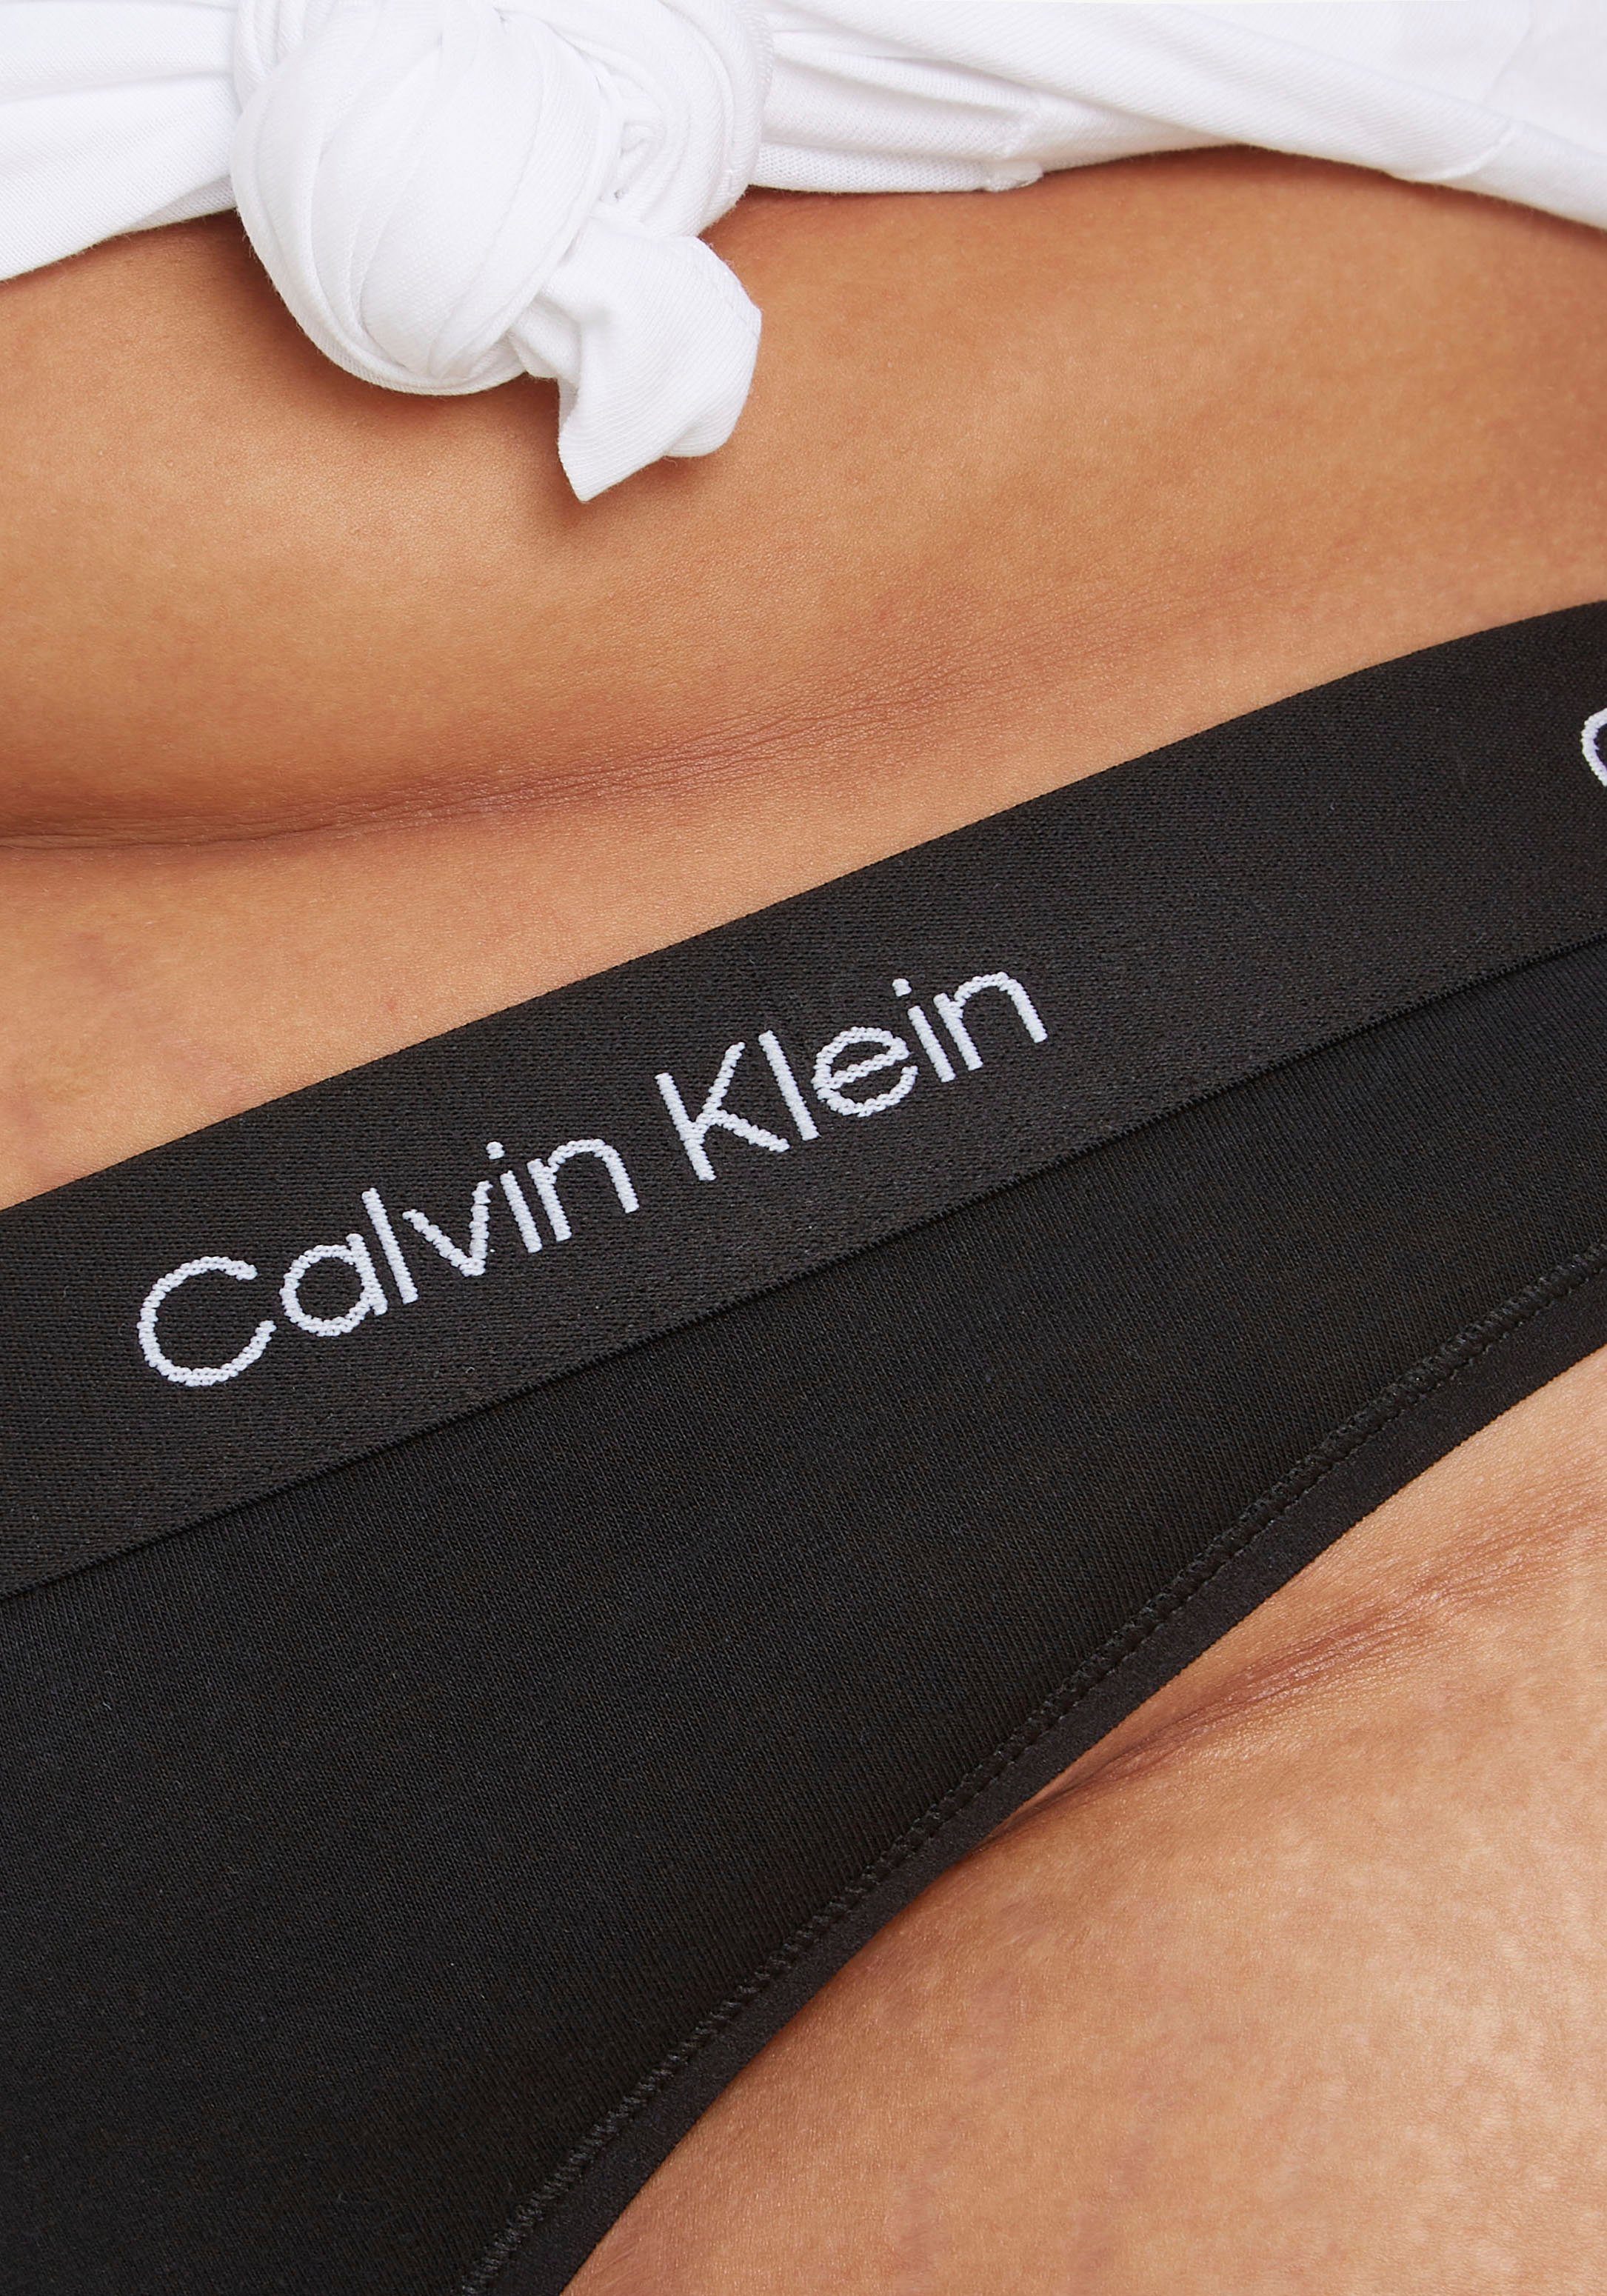 Calvin MODERN (FF) in THONG Size T-String Underwear BLACK Größen Klein Plus